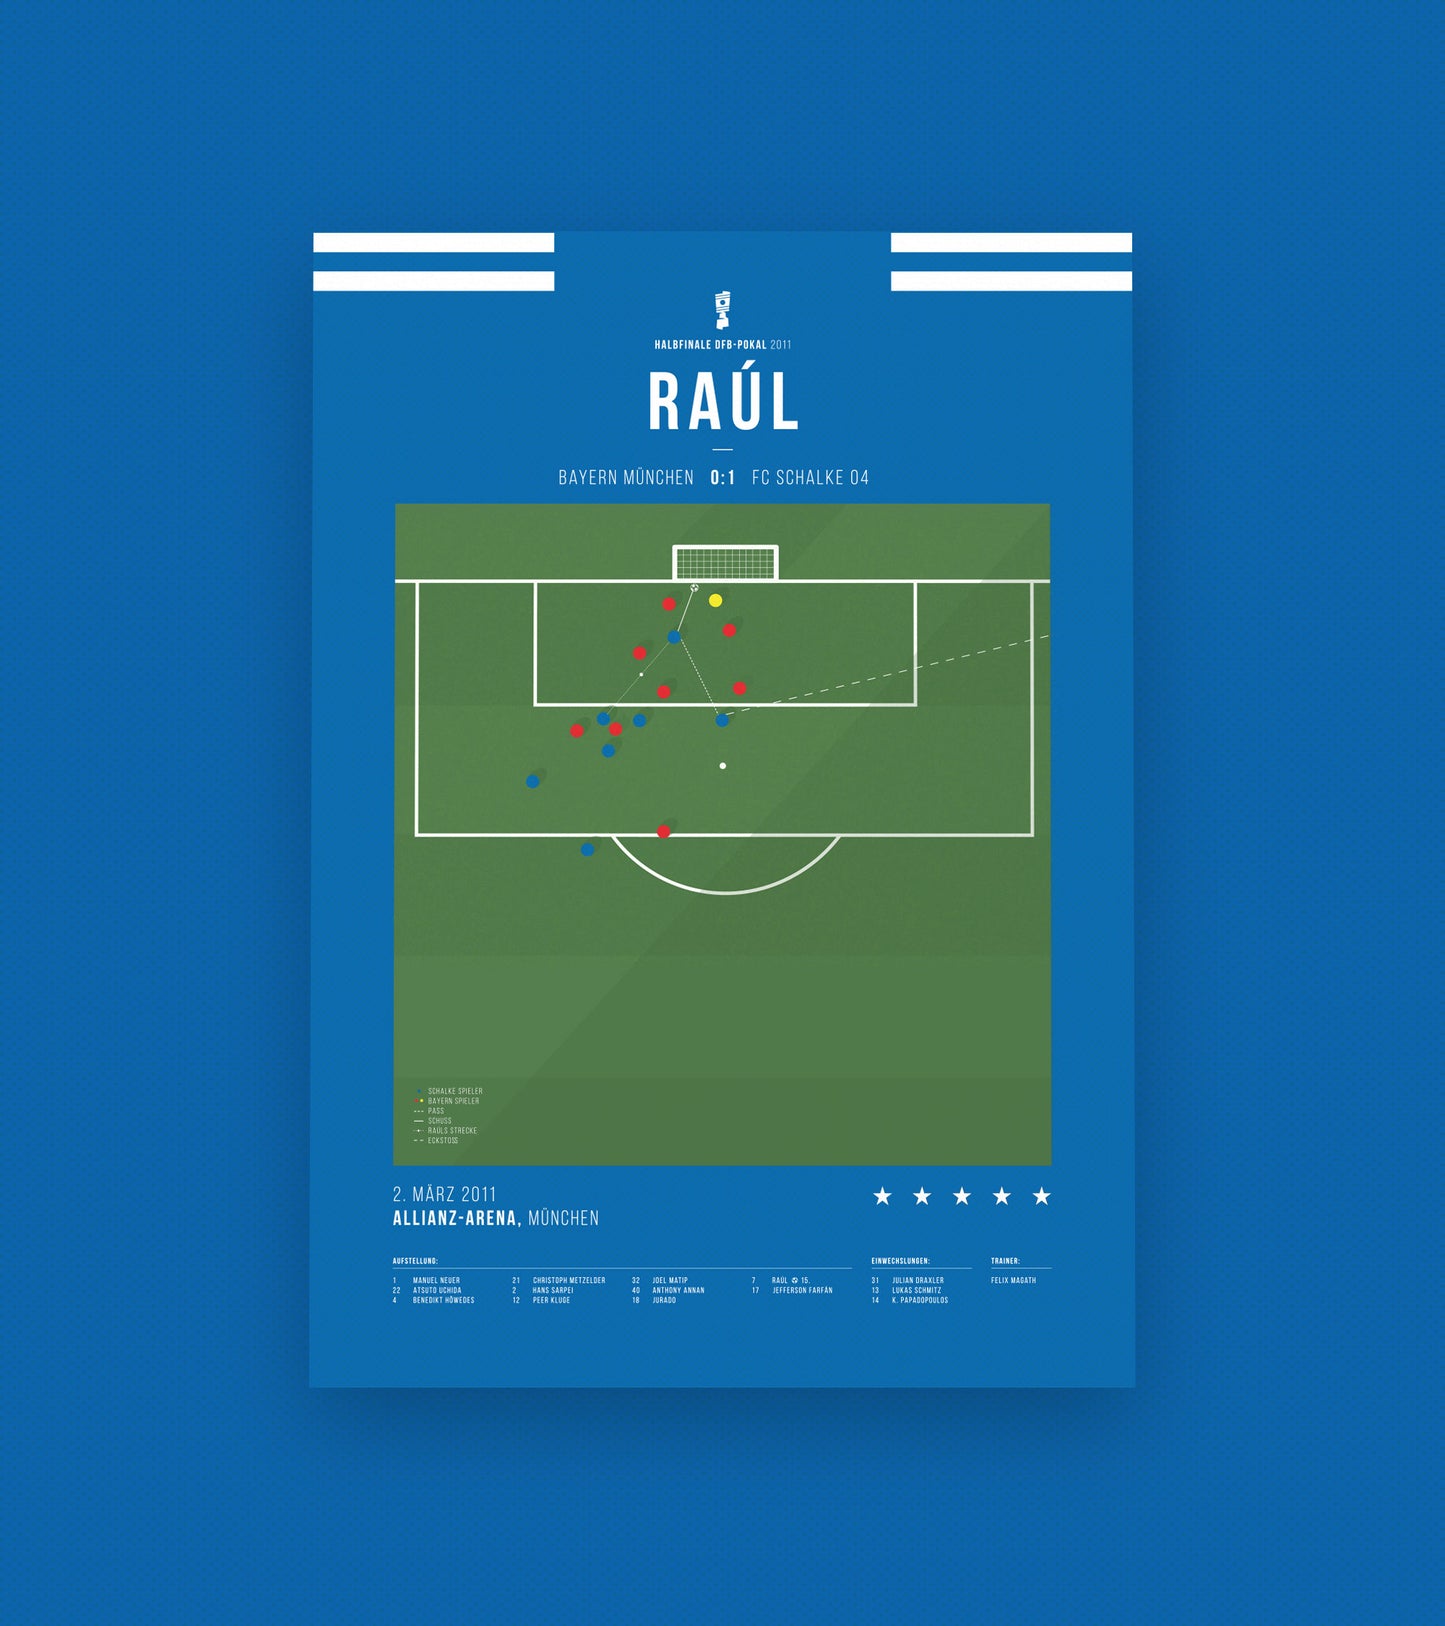 Raul contre Munich